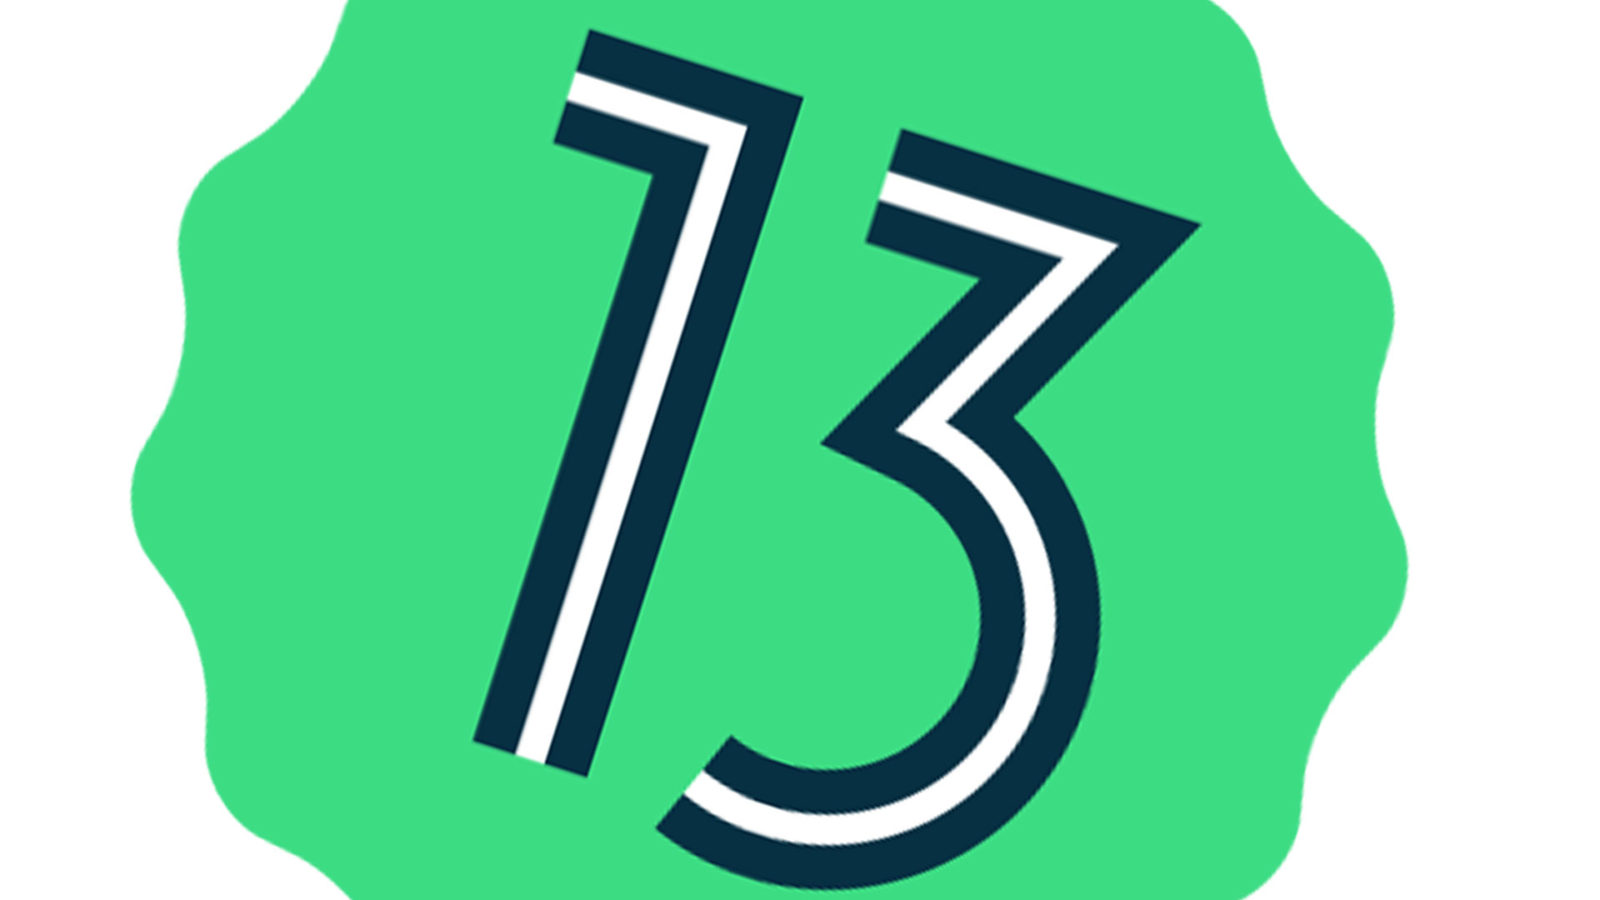 Twee nummers op een smartphone Android 13 maakt het makkelijker